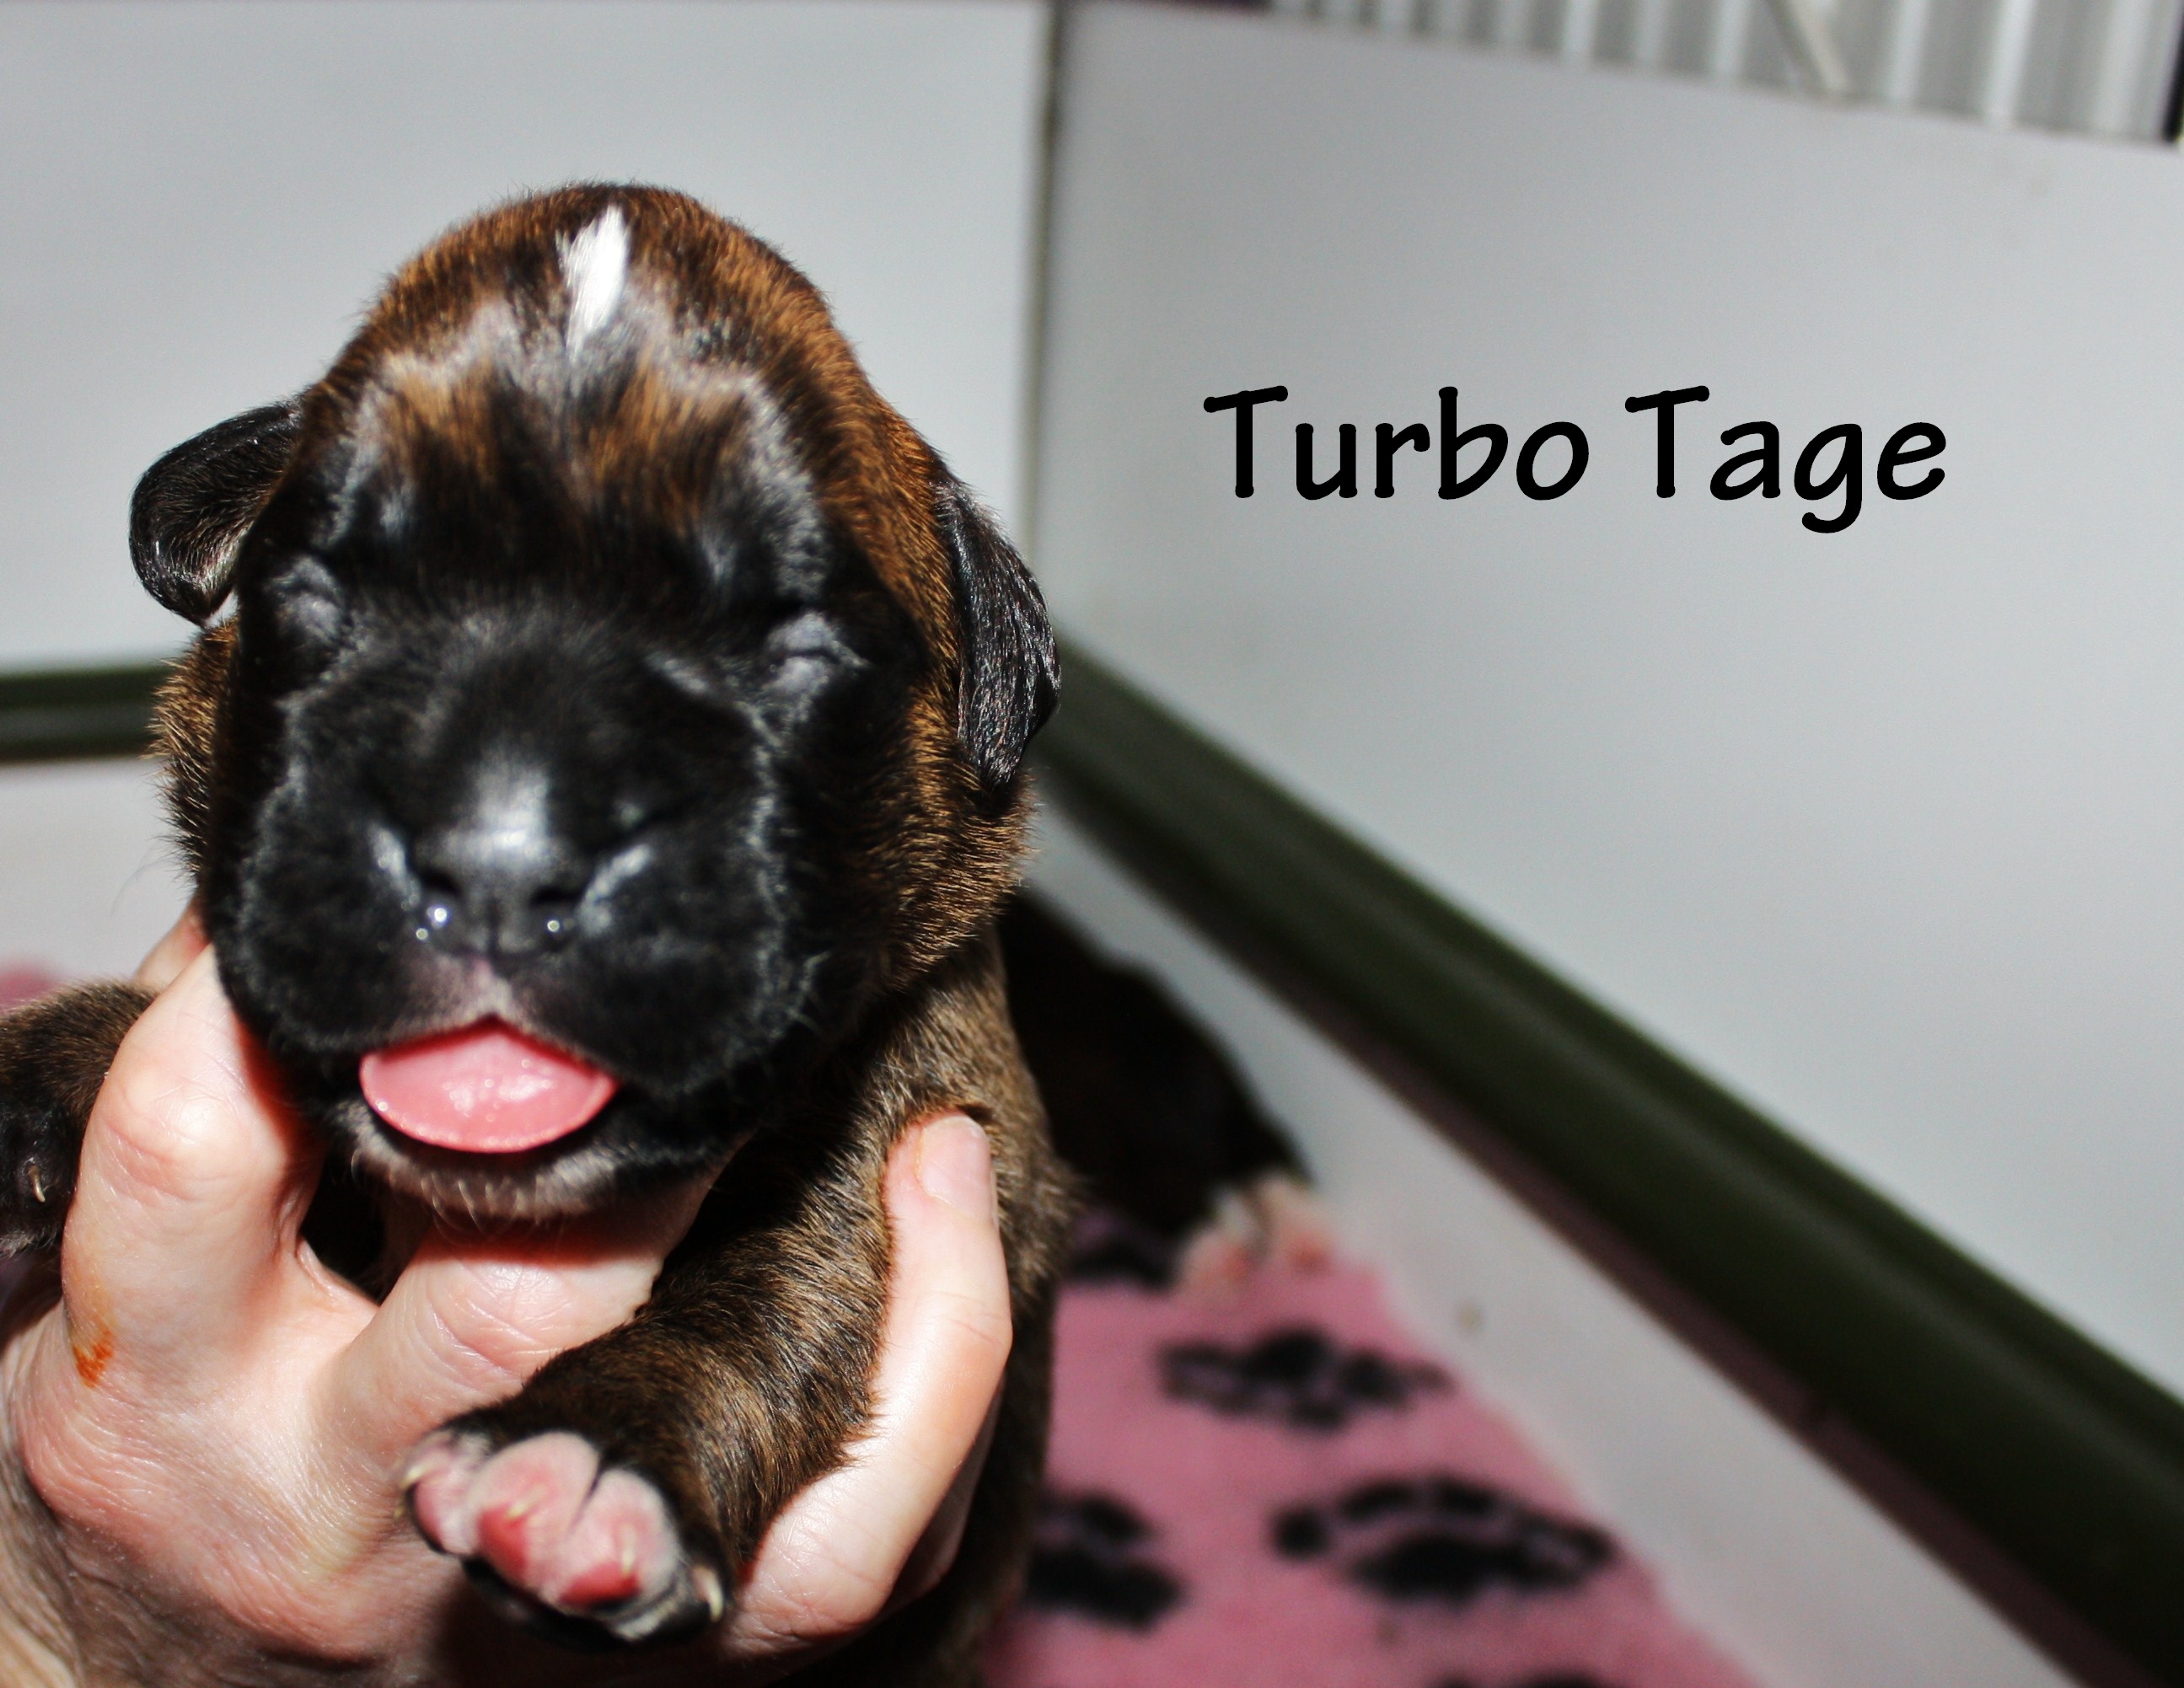 Turbo Tage